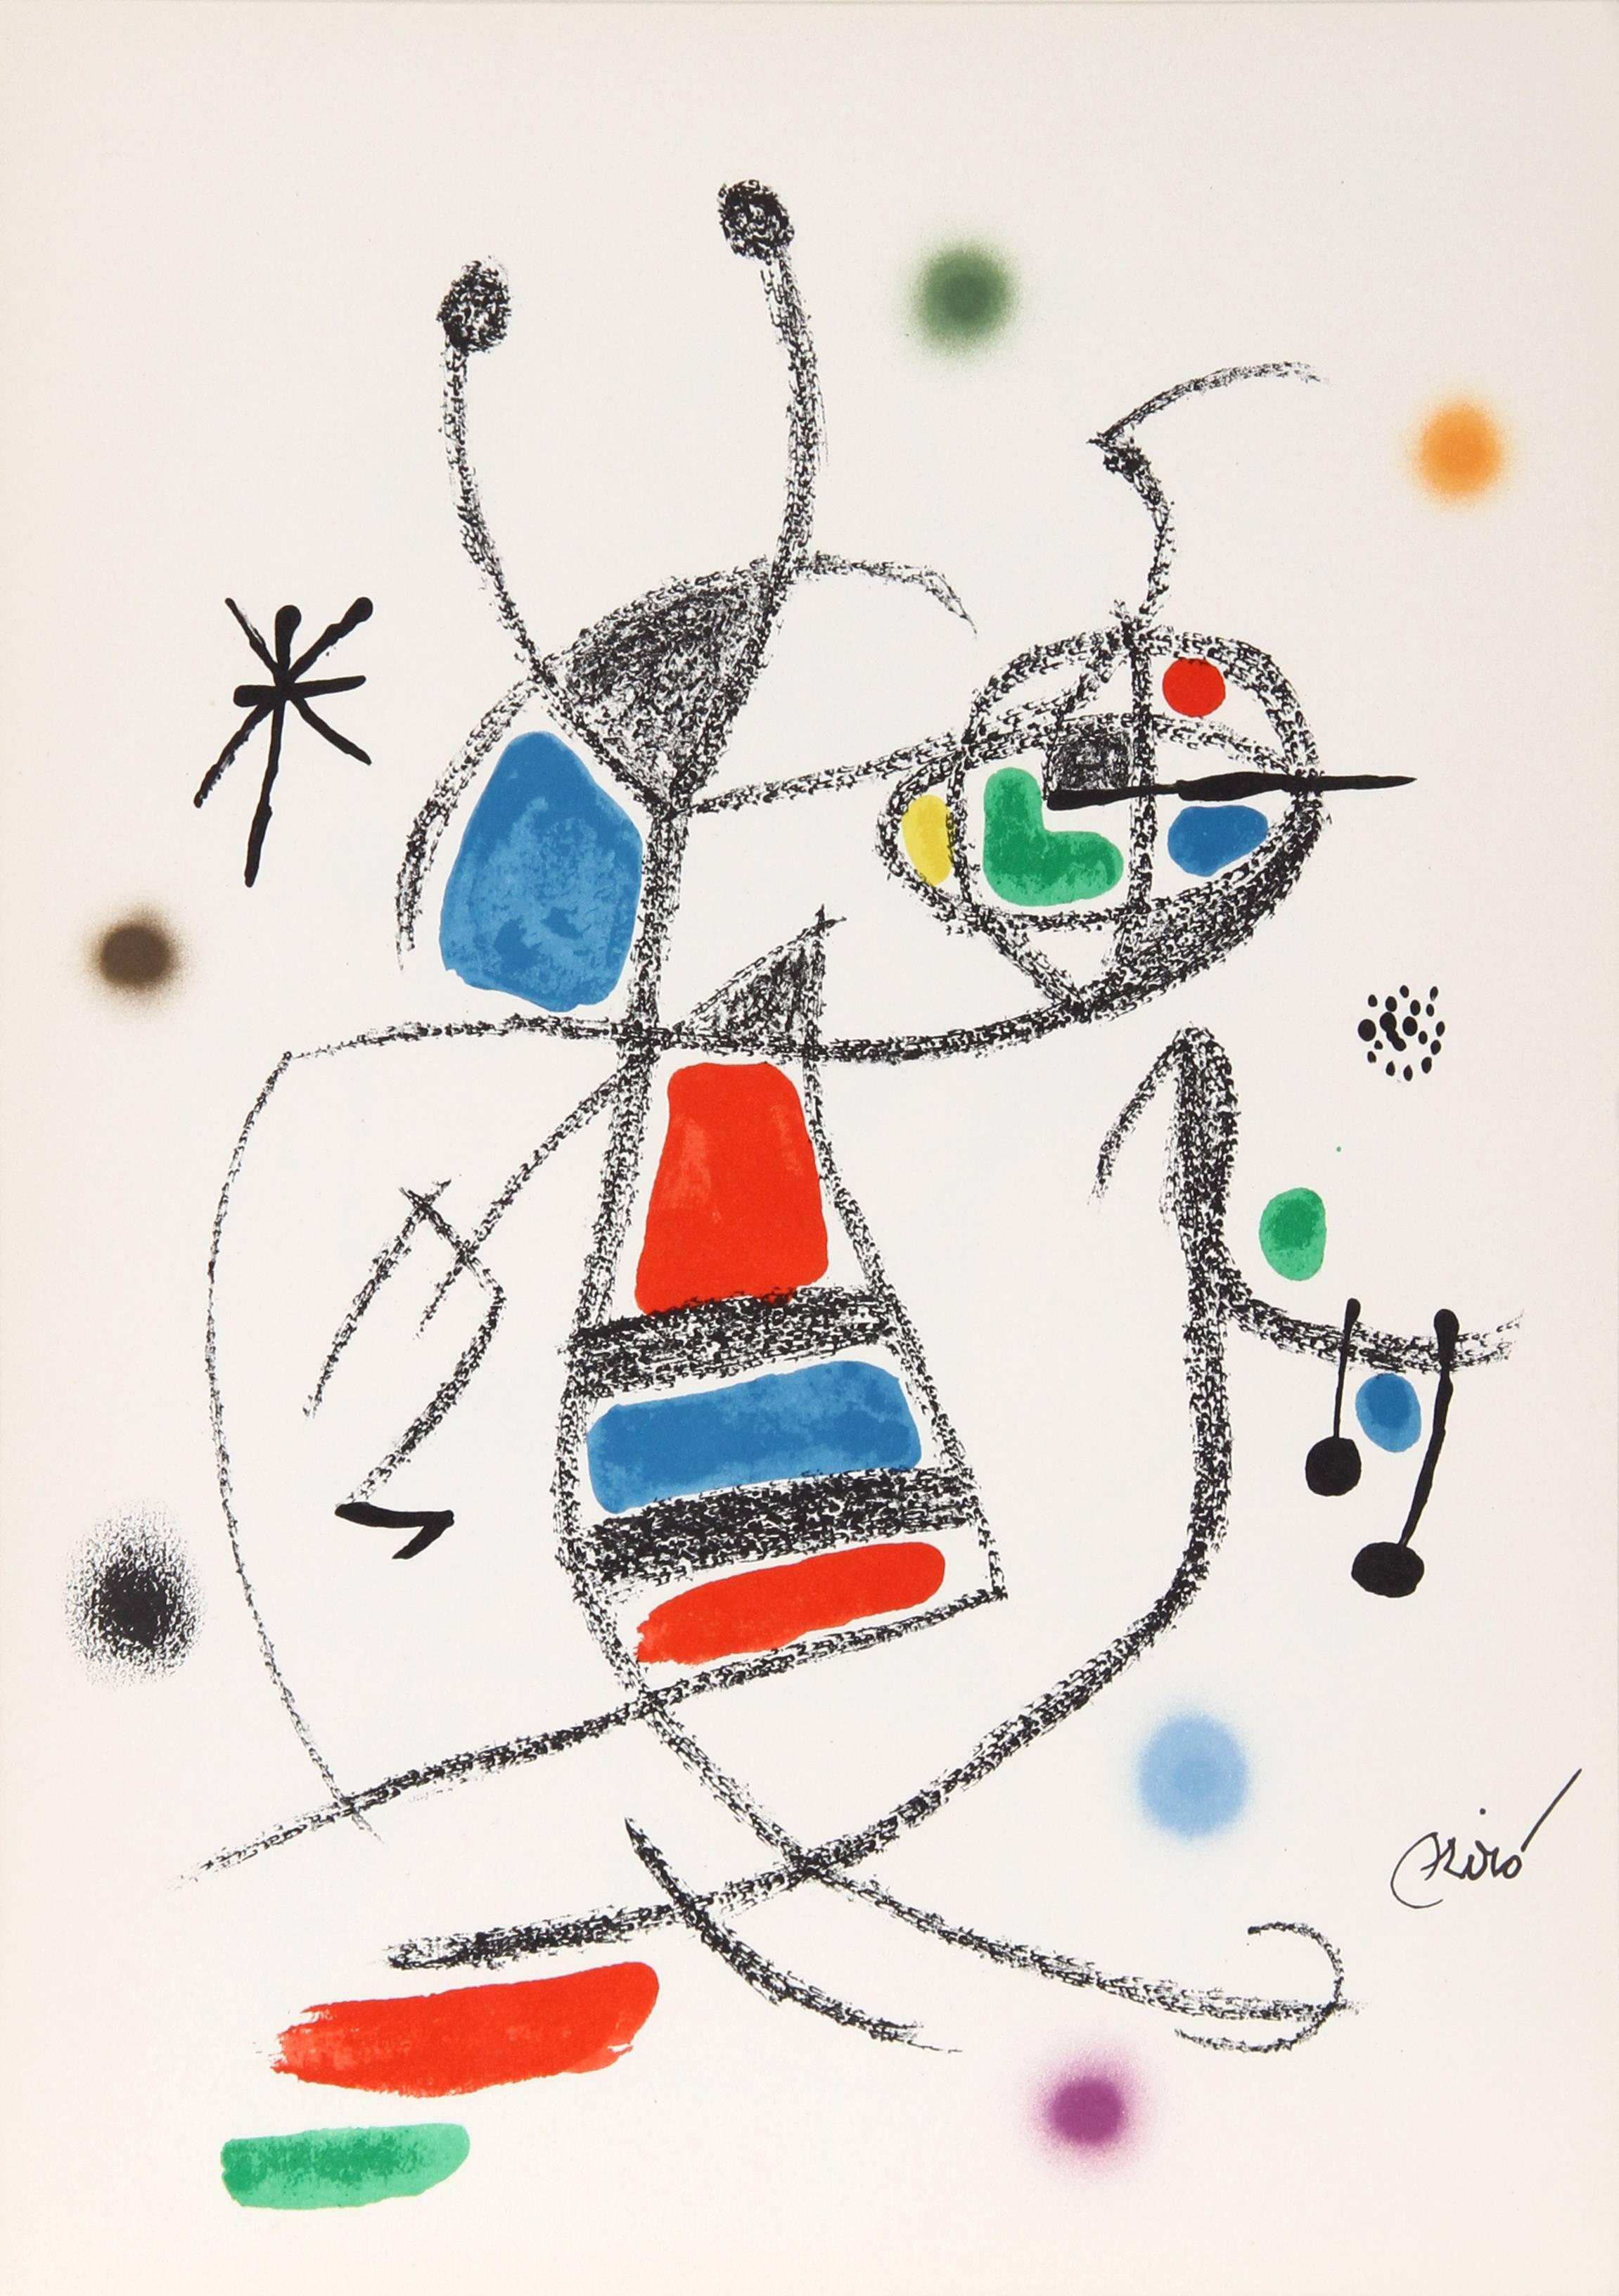 Maravillas con Variaciones Acrosticas dans le Jardin de Miro (Number 10) - Print de Joan Miró